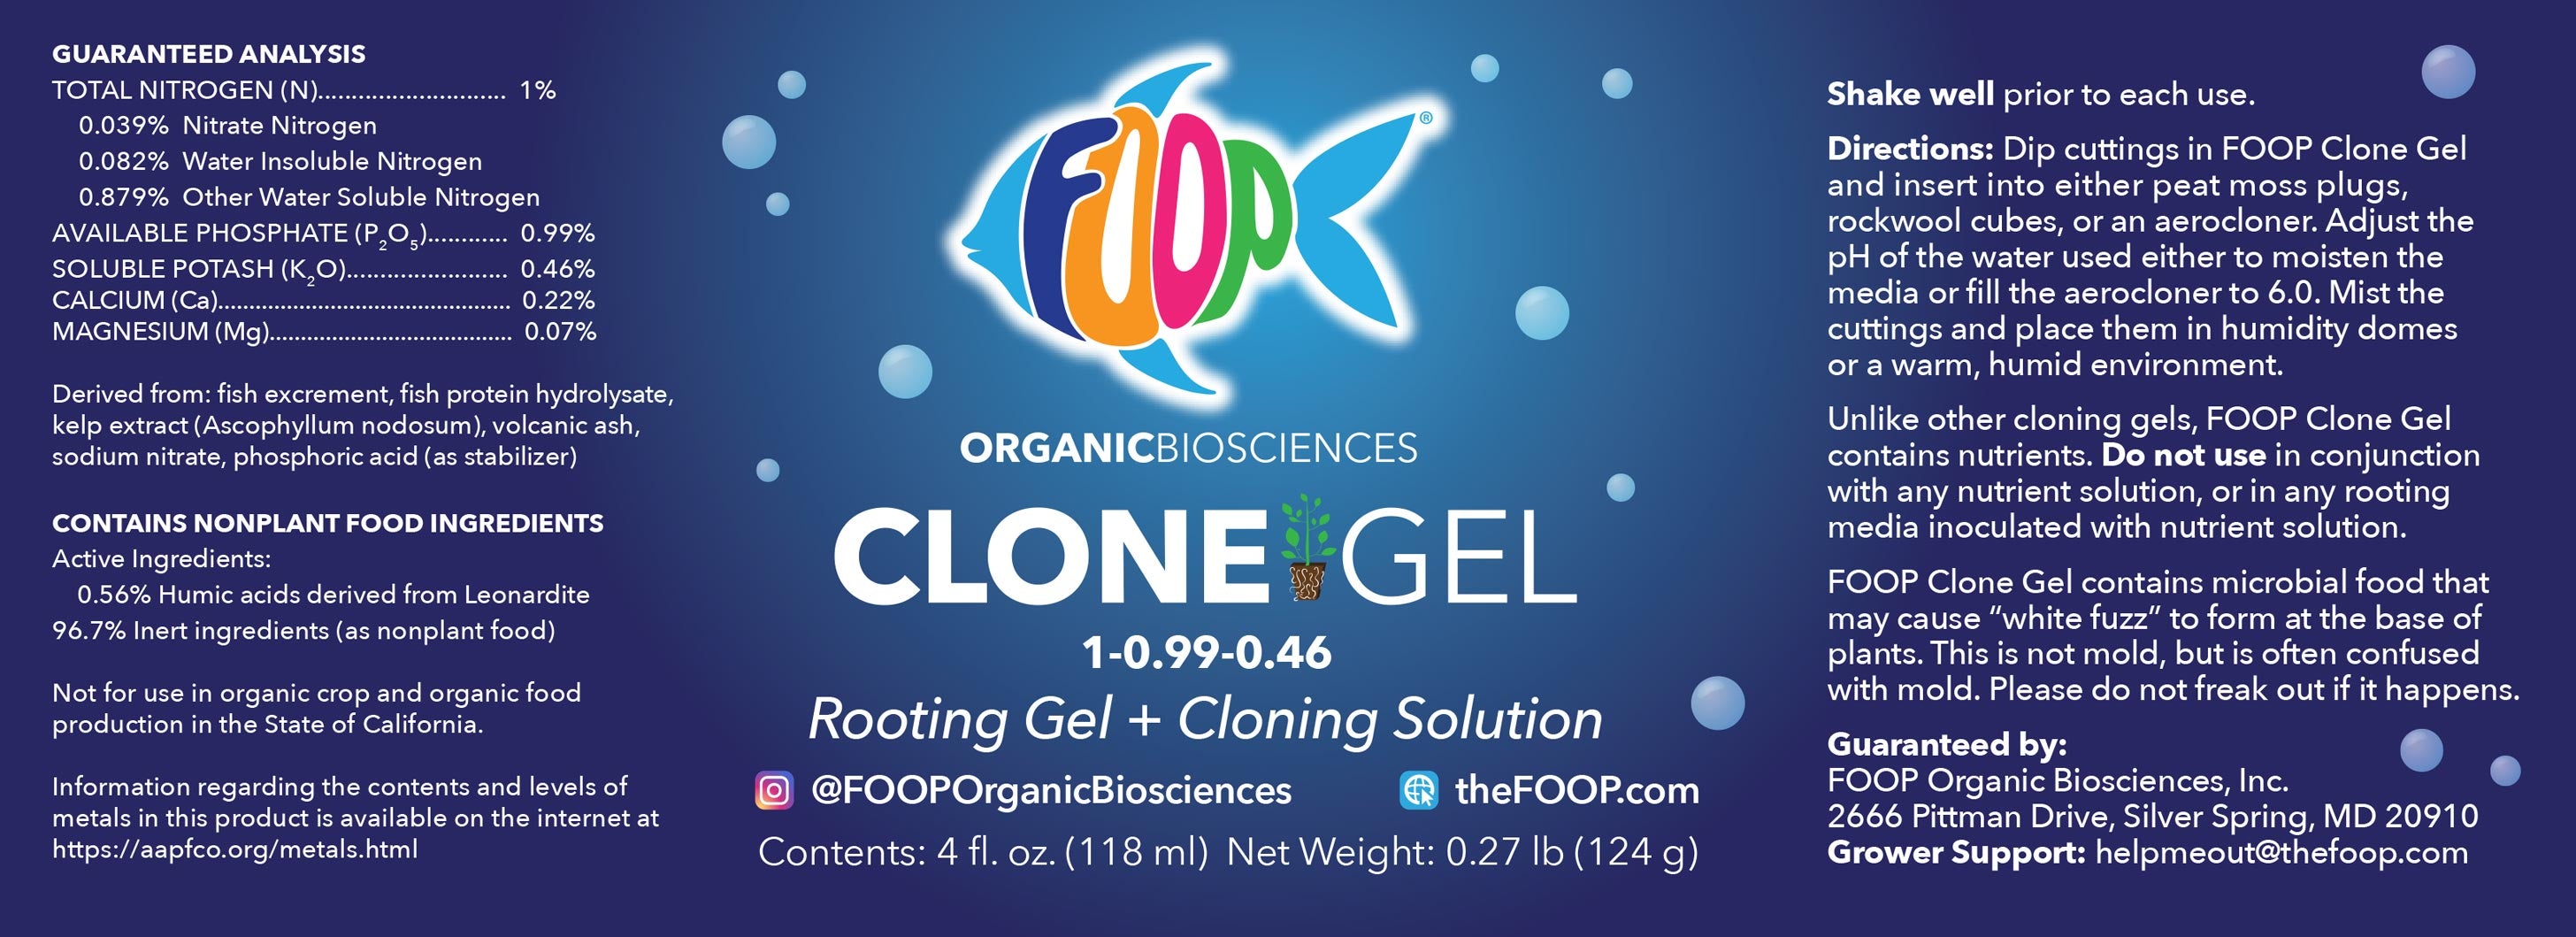 FOOP Clone Gel Label